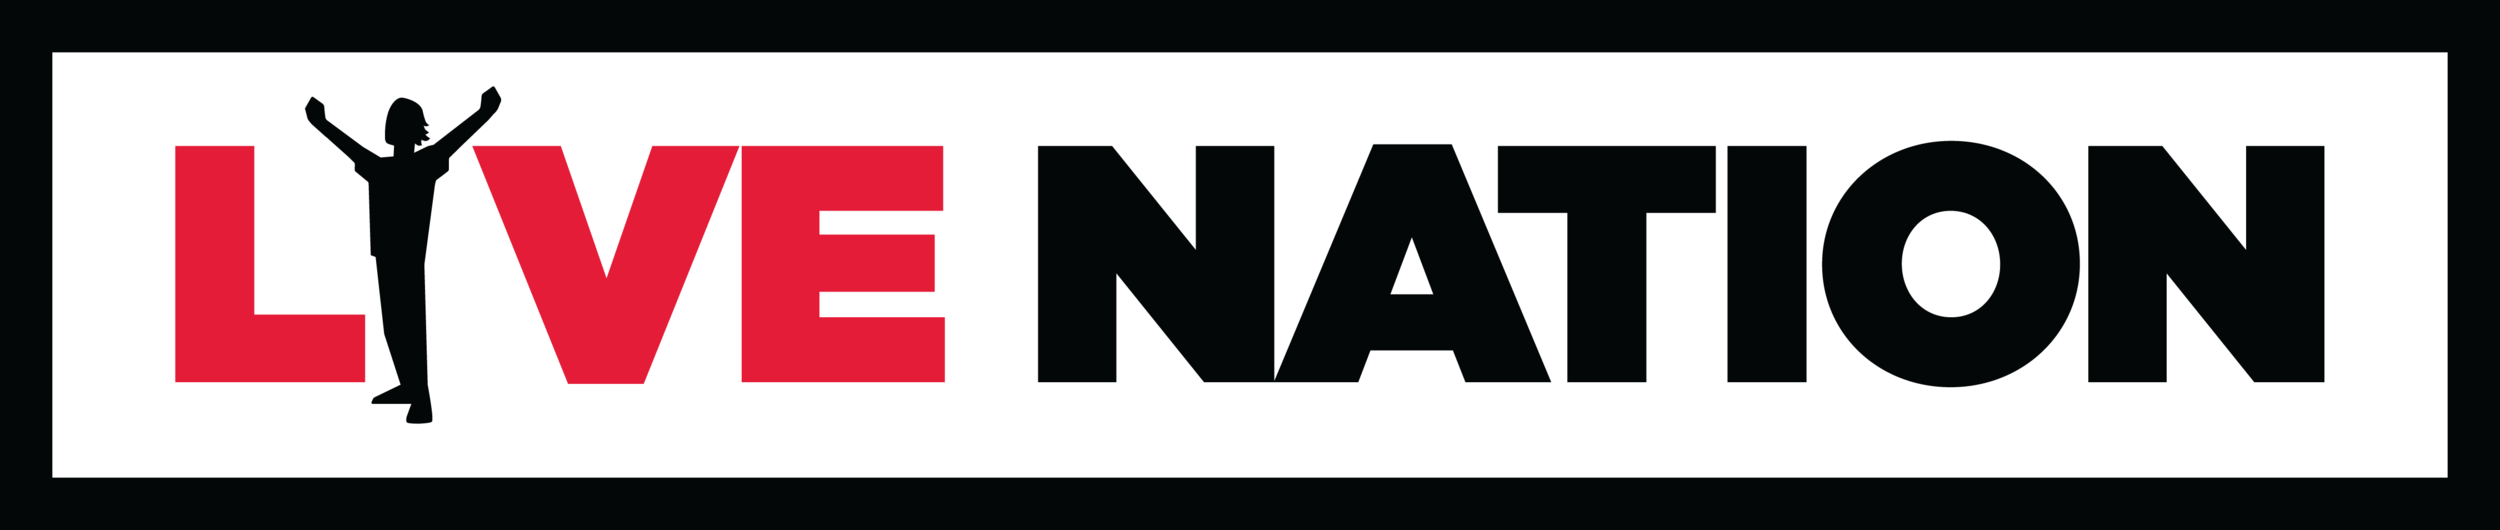 live nation logo.png